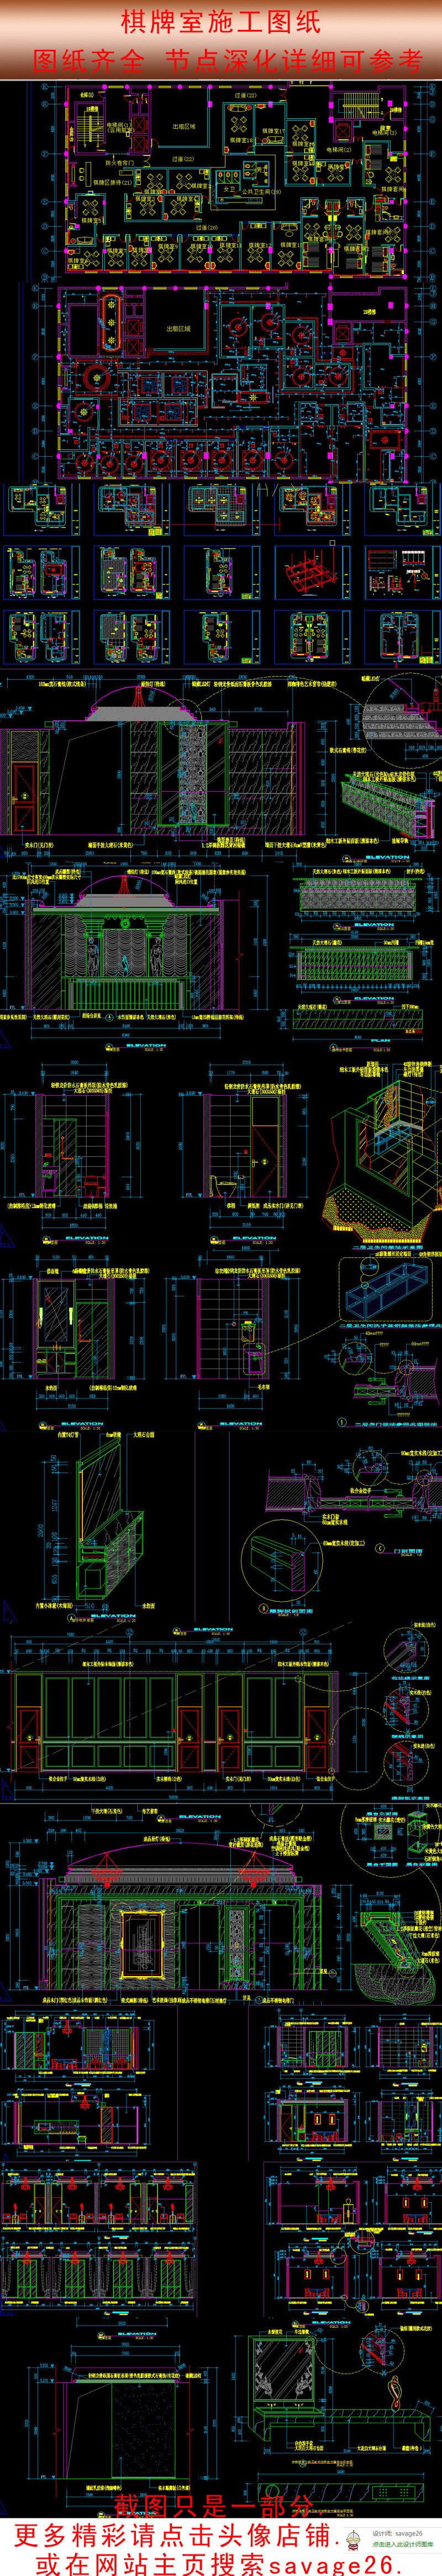 原创精品棋牌室CAD施工图设计